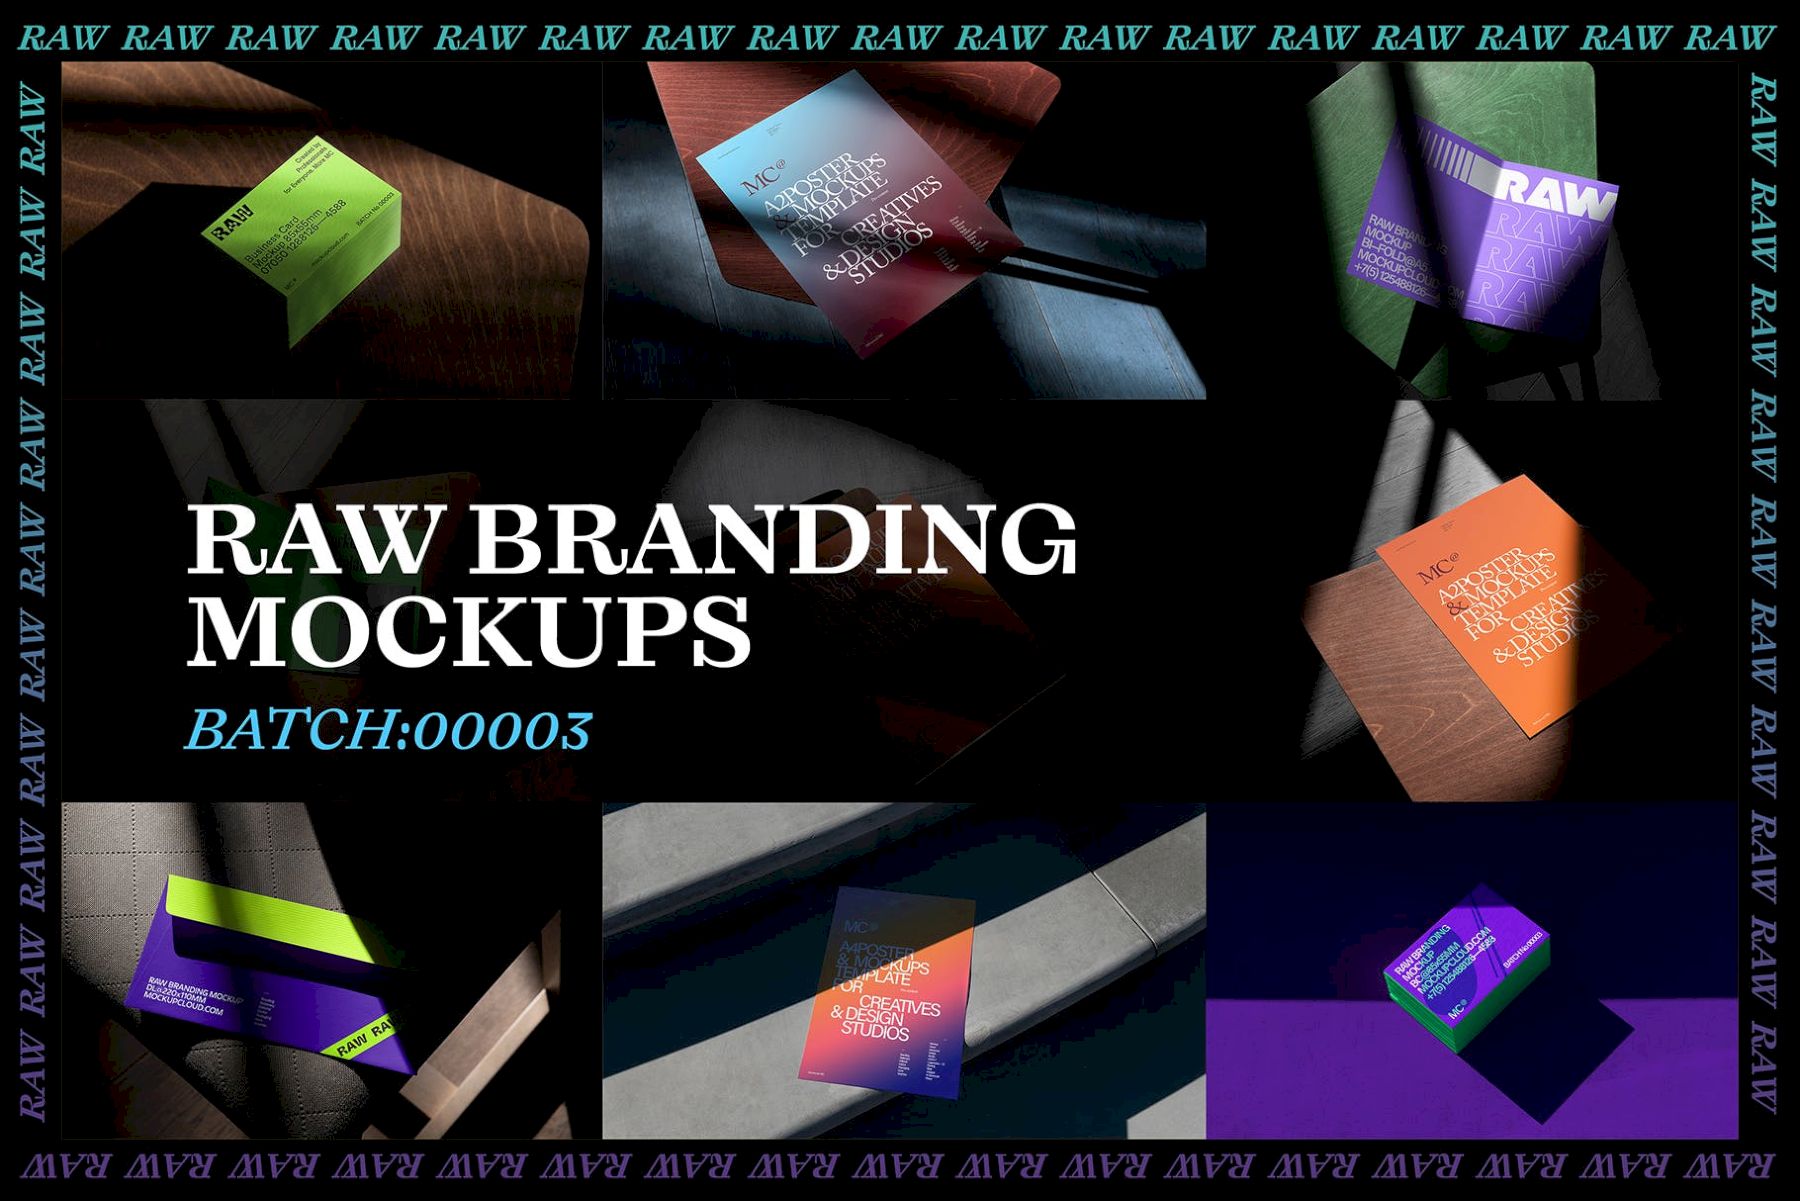 自然光照片品牌样机 Vol. 3 Raw Branding Mockups / Batch 00003